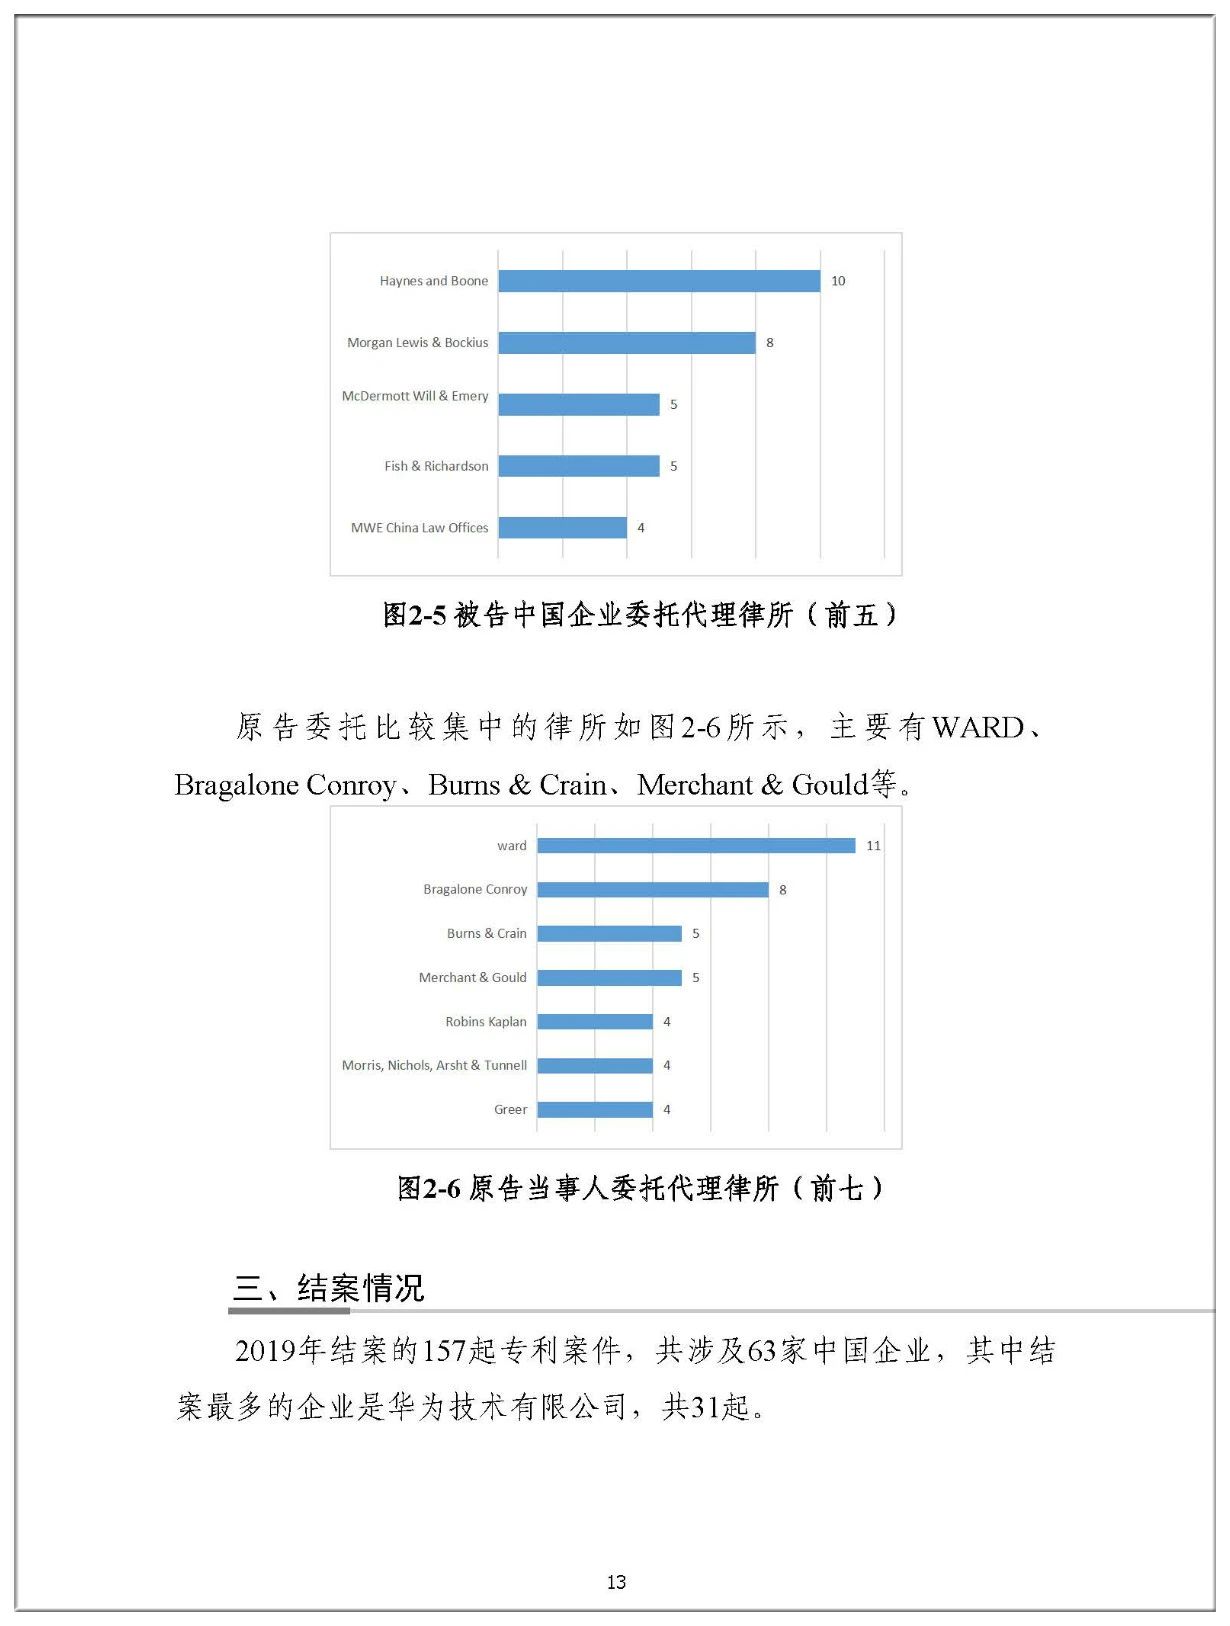 2019年中国企业涉美知识产权诉讼报告（全文）